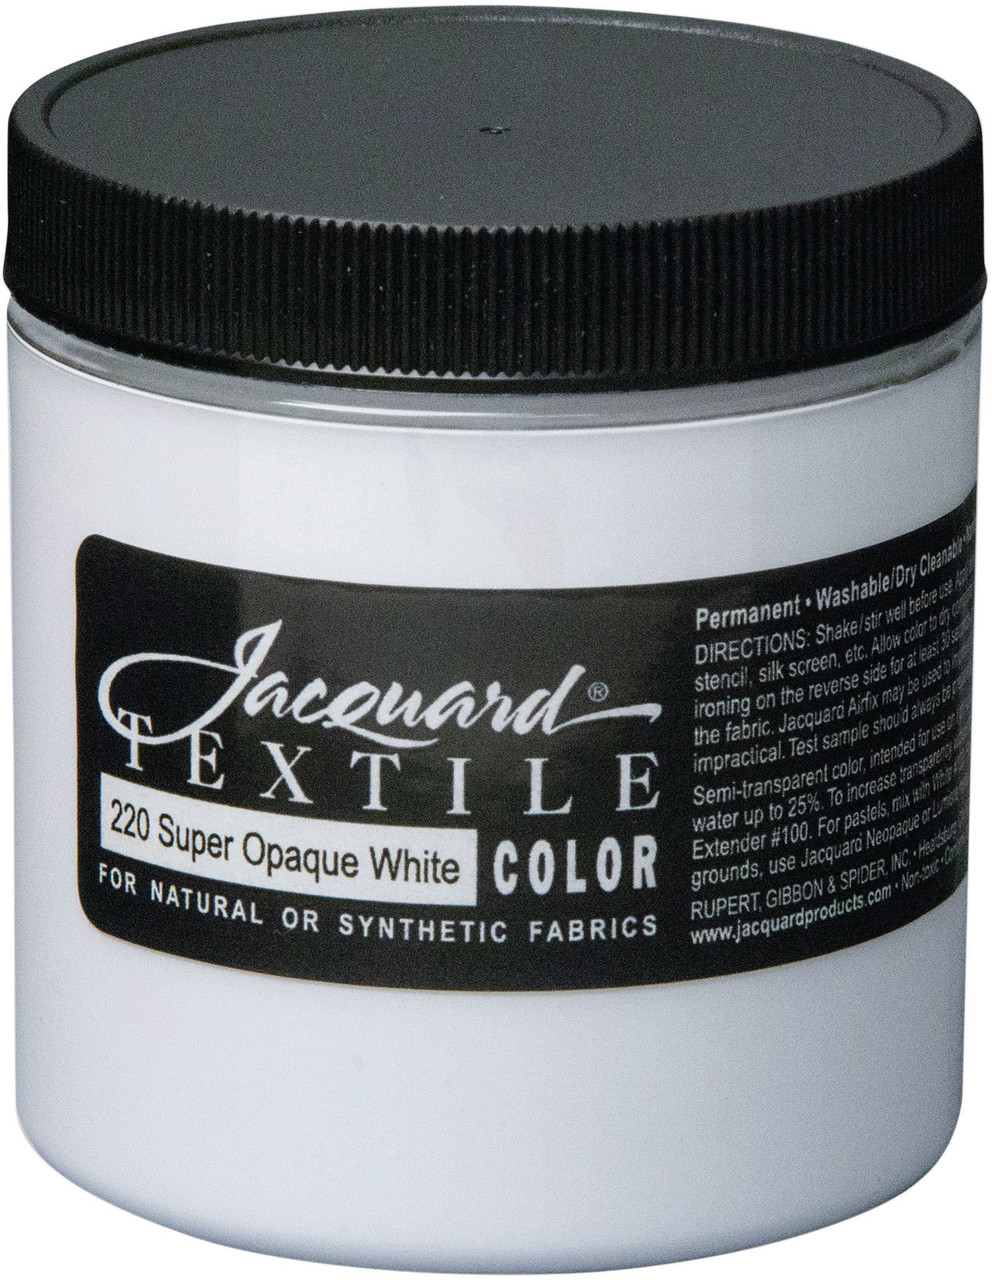 Jacquard Textile Color Fabric Paint 8oz White